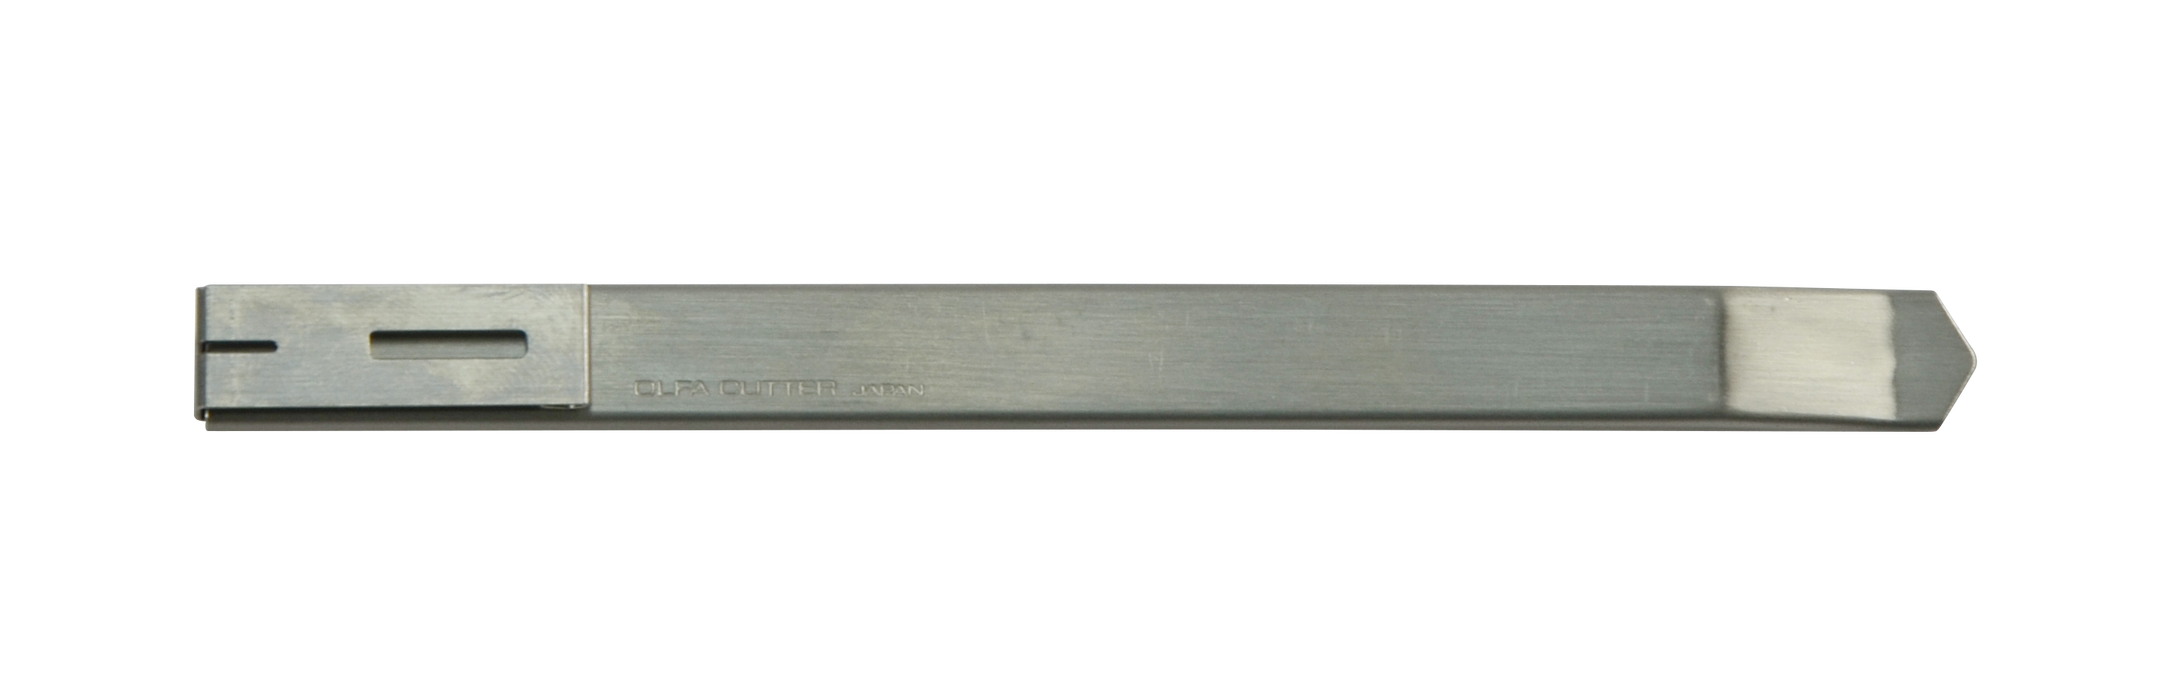 Olfa SVR-2 brytbladskniv för 9mm 59° blad